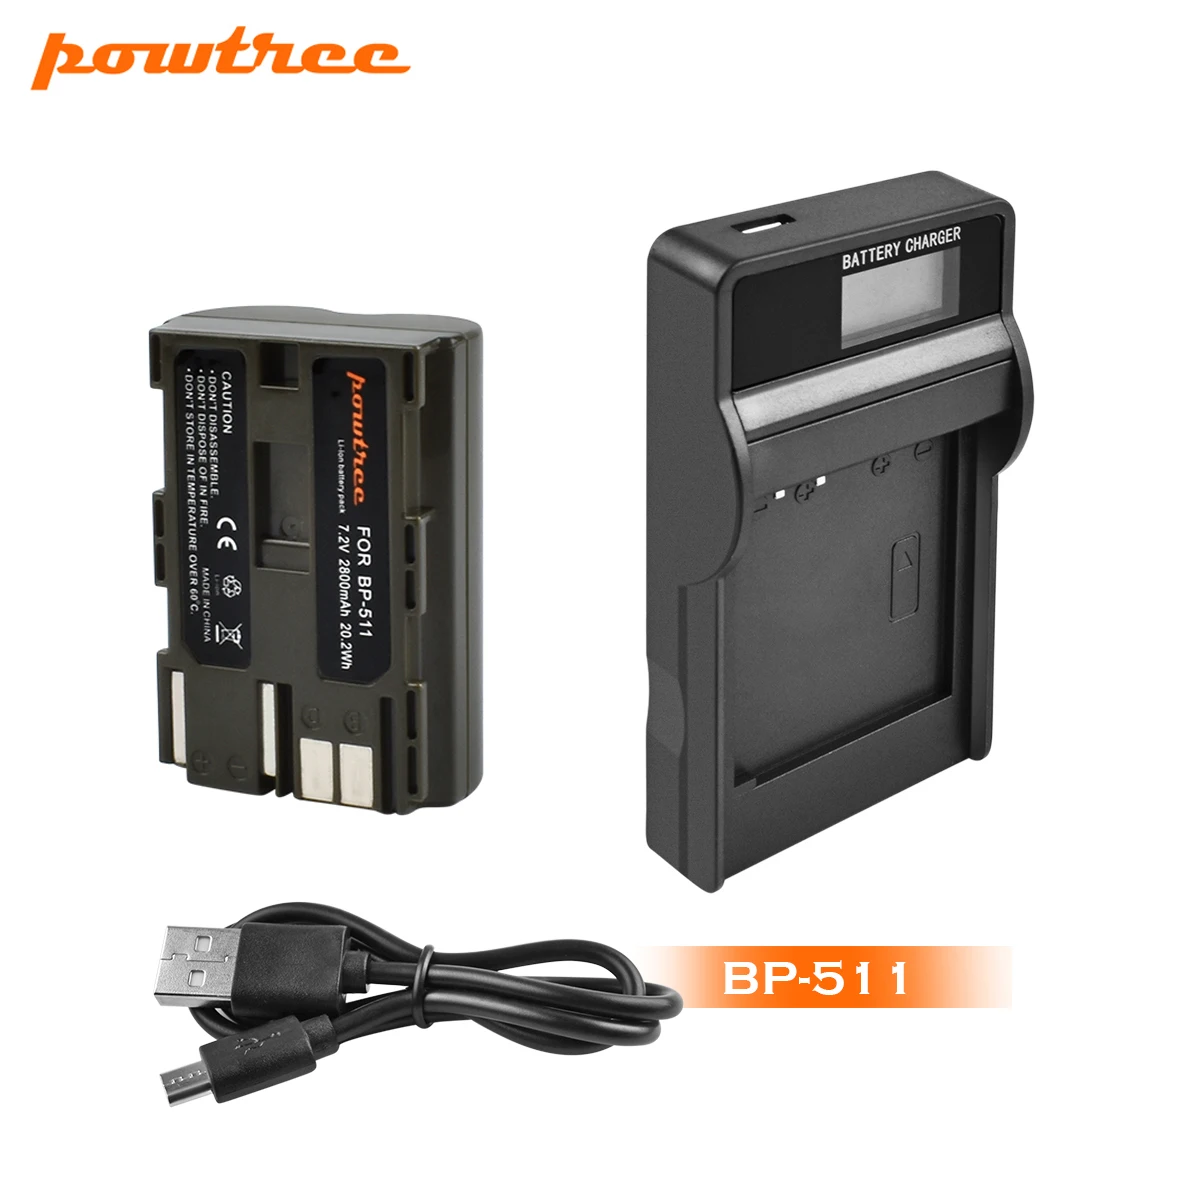 Powtree 2800 мА/ч, BP-511 BP511 BP 511 BP-511A Батарея+ ЖК-дисплей Зарядное устройство для Canon G6 G5 G3 G2 G1 EOS 300D 50D 40D 30D 20D 5D L10 - Цвет: 1X Battery Charger